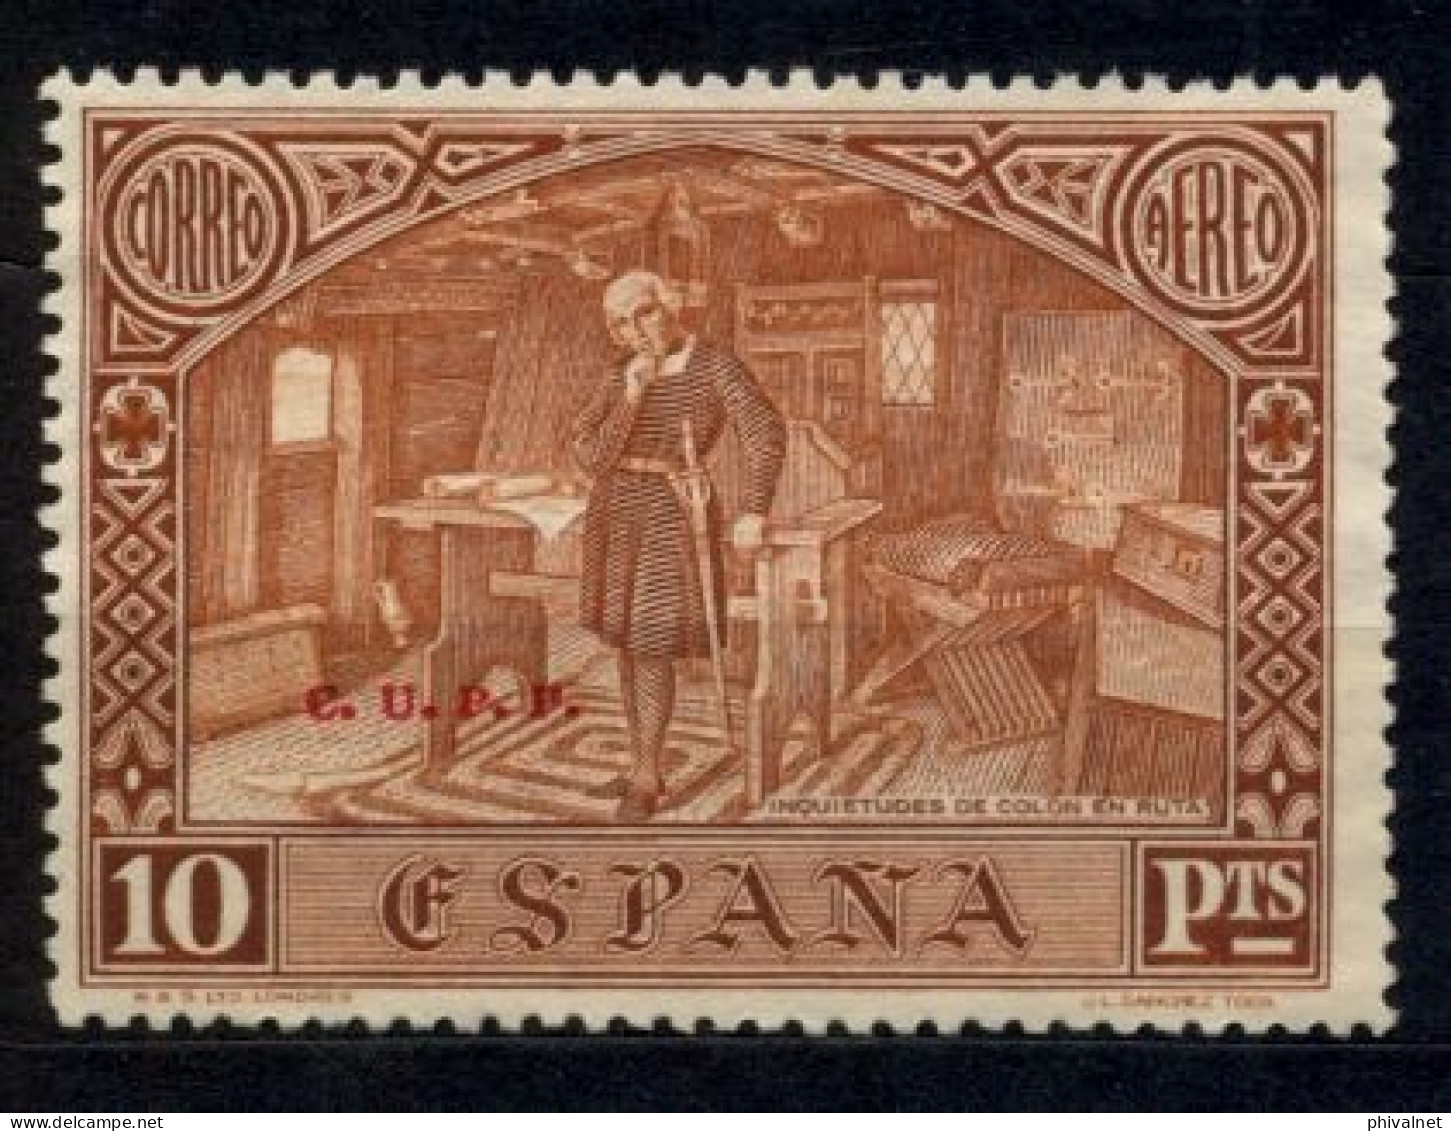 ED. 558H (*) , DESCUBRIMIENTO DE AMÉRICA  , SELLO HABILITADO ( C.U.P.P. ) - Unused Stamps